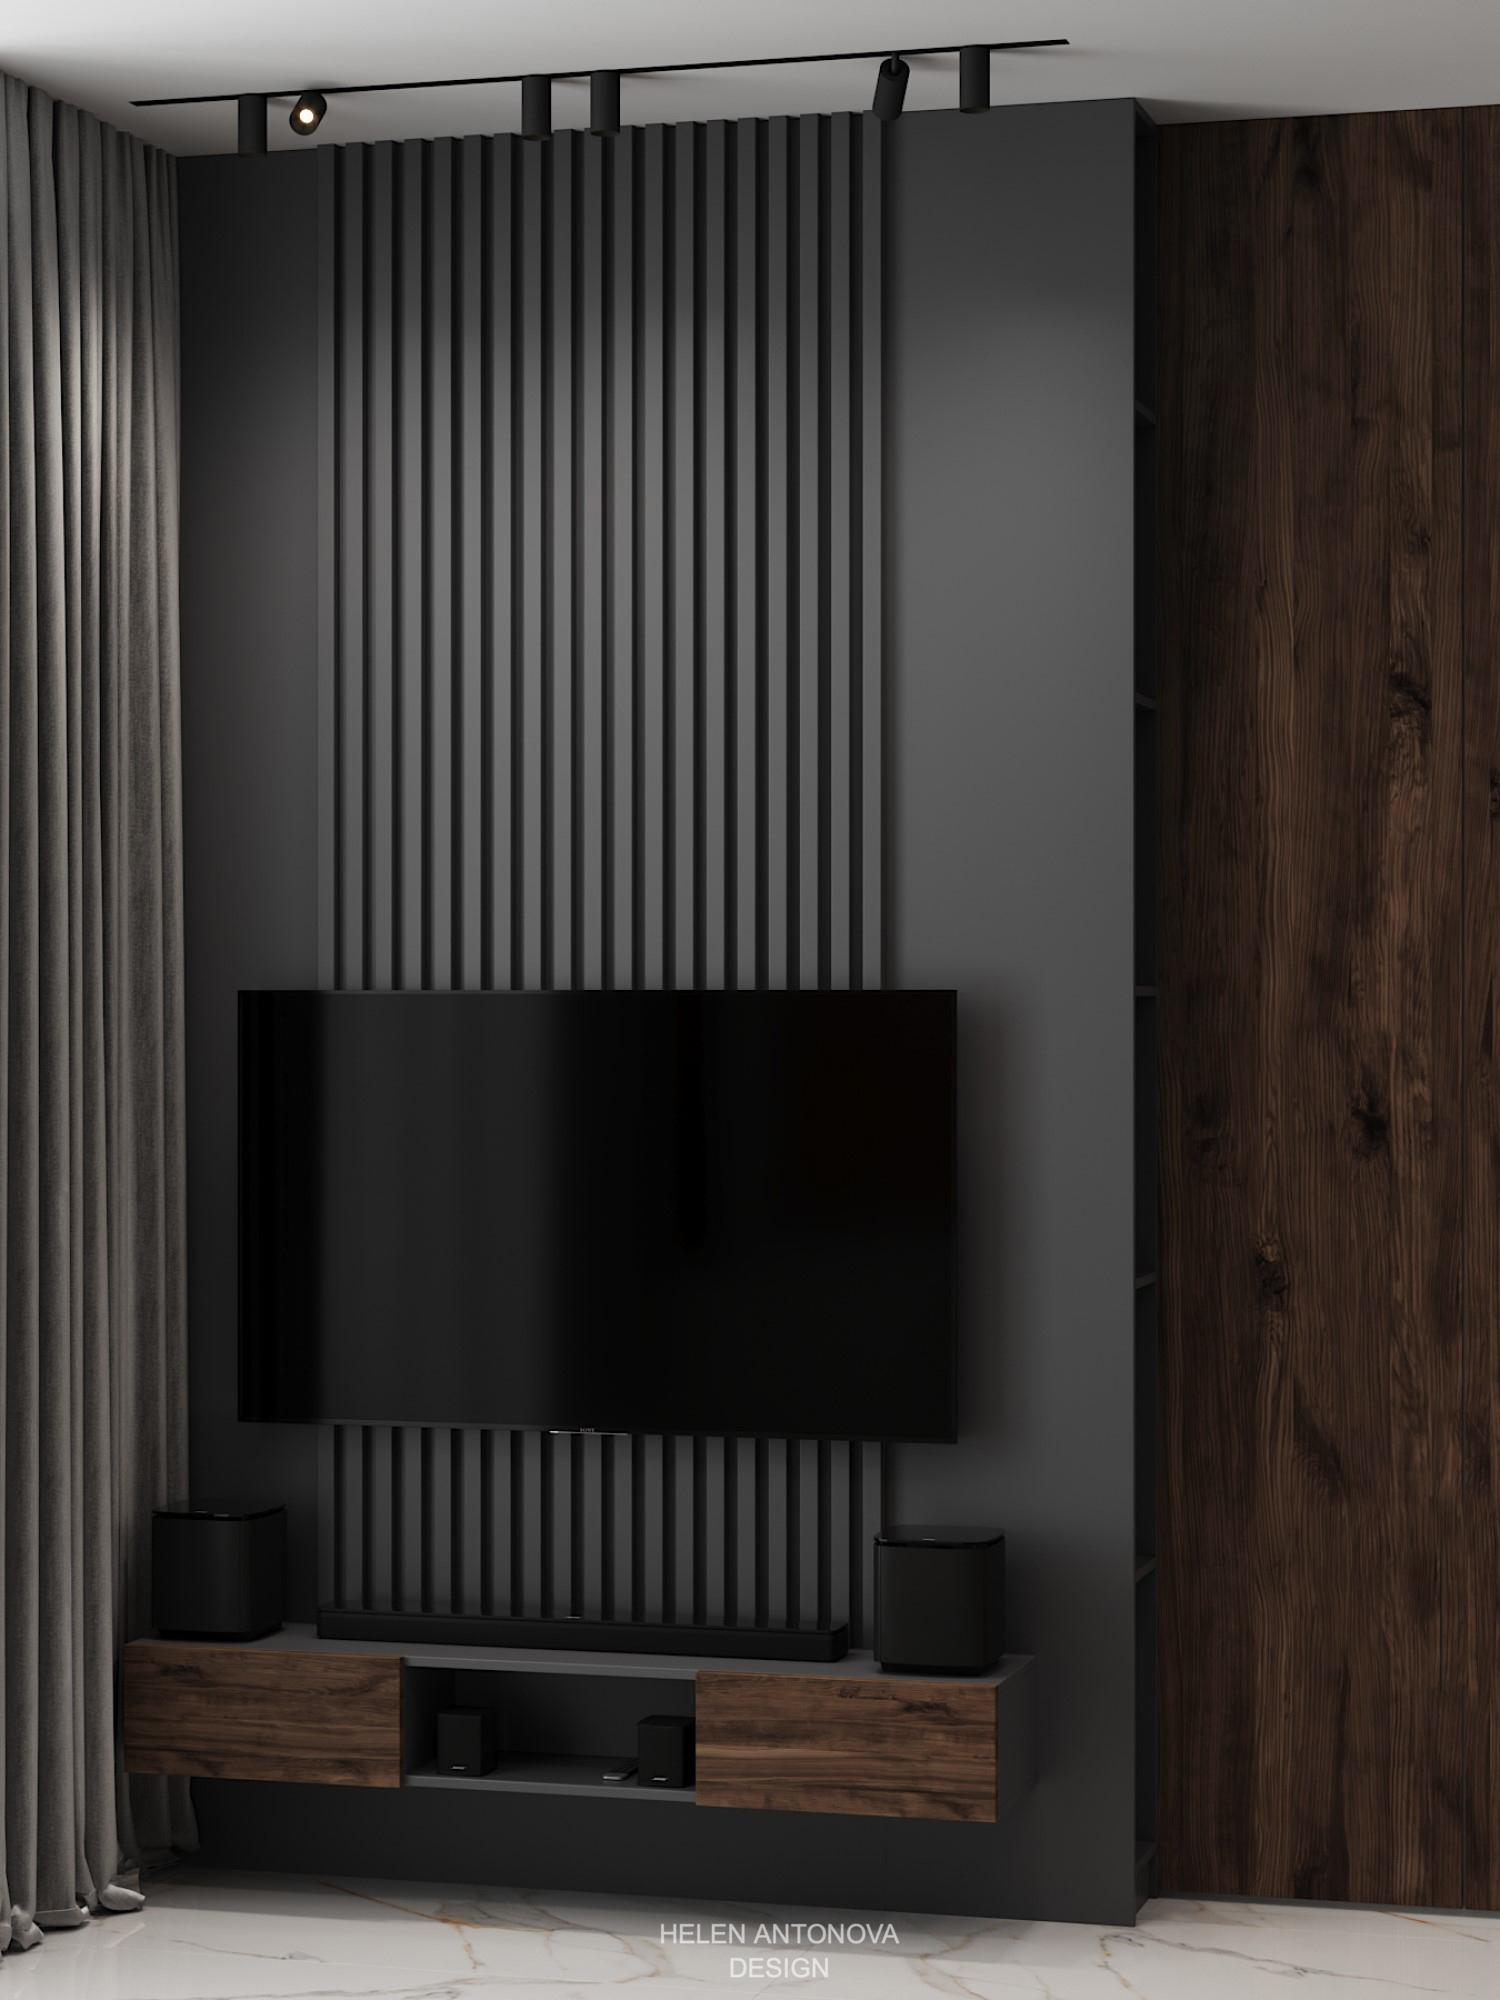 Интерьер cтеной с телевизором, телевизором на рейках, телевизором на стене и керамогранитом на стену с телевизором